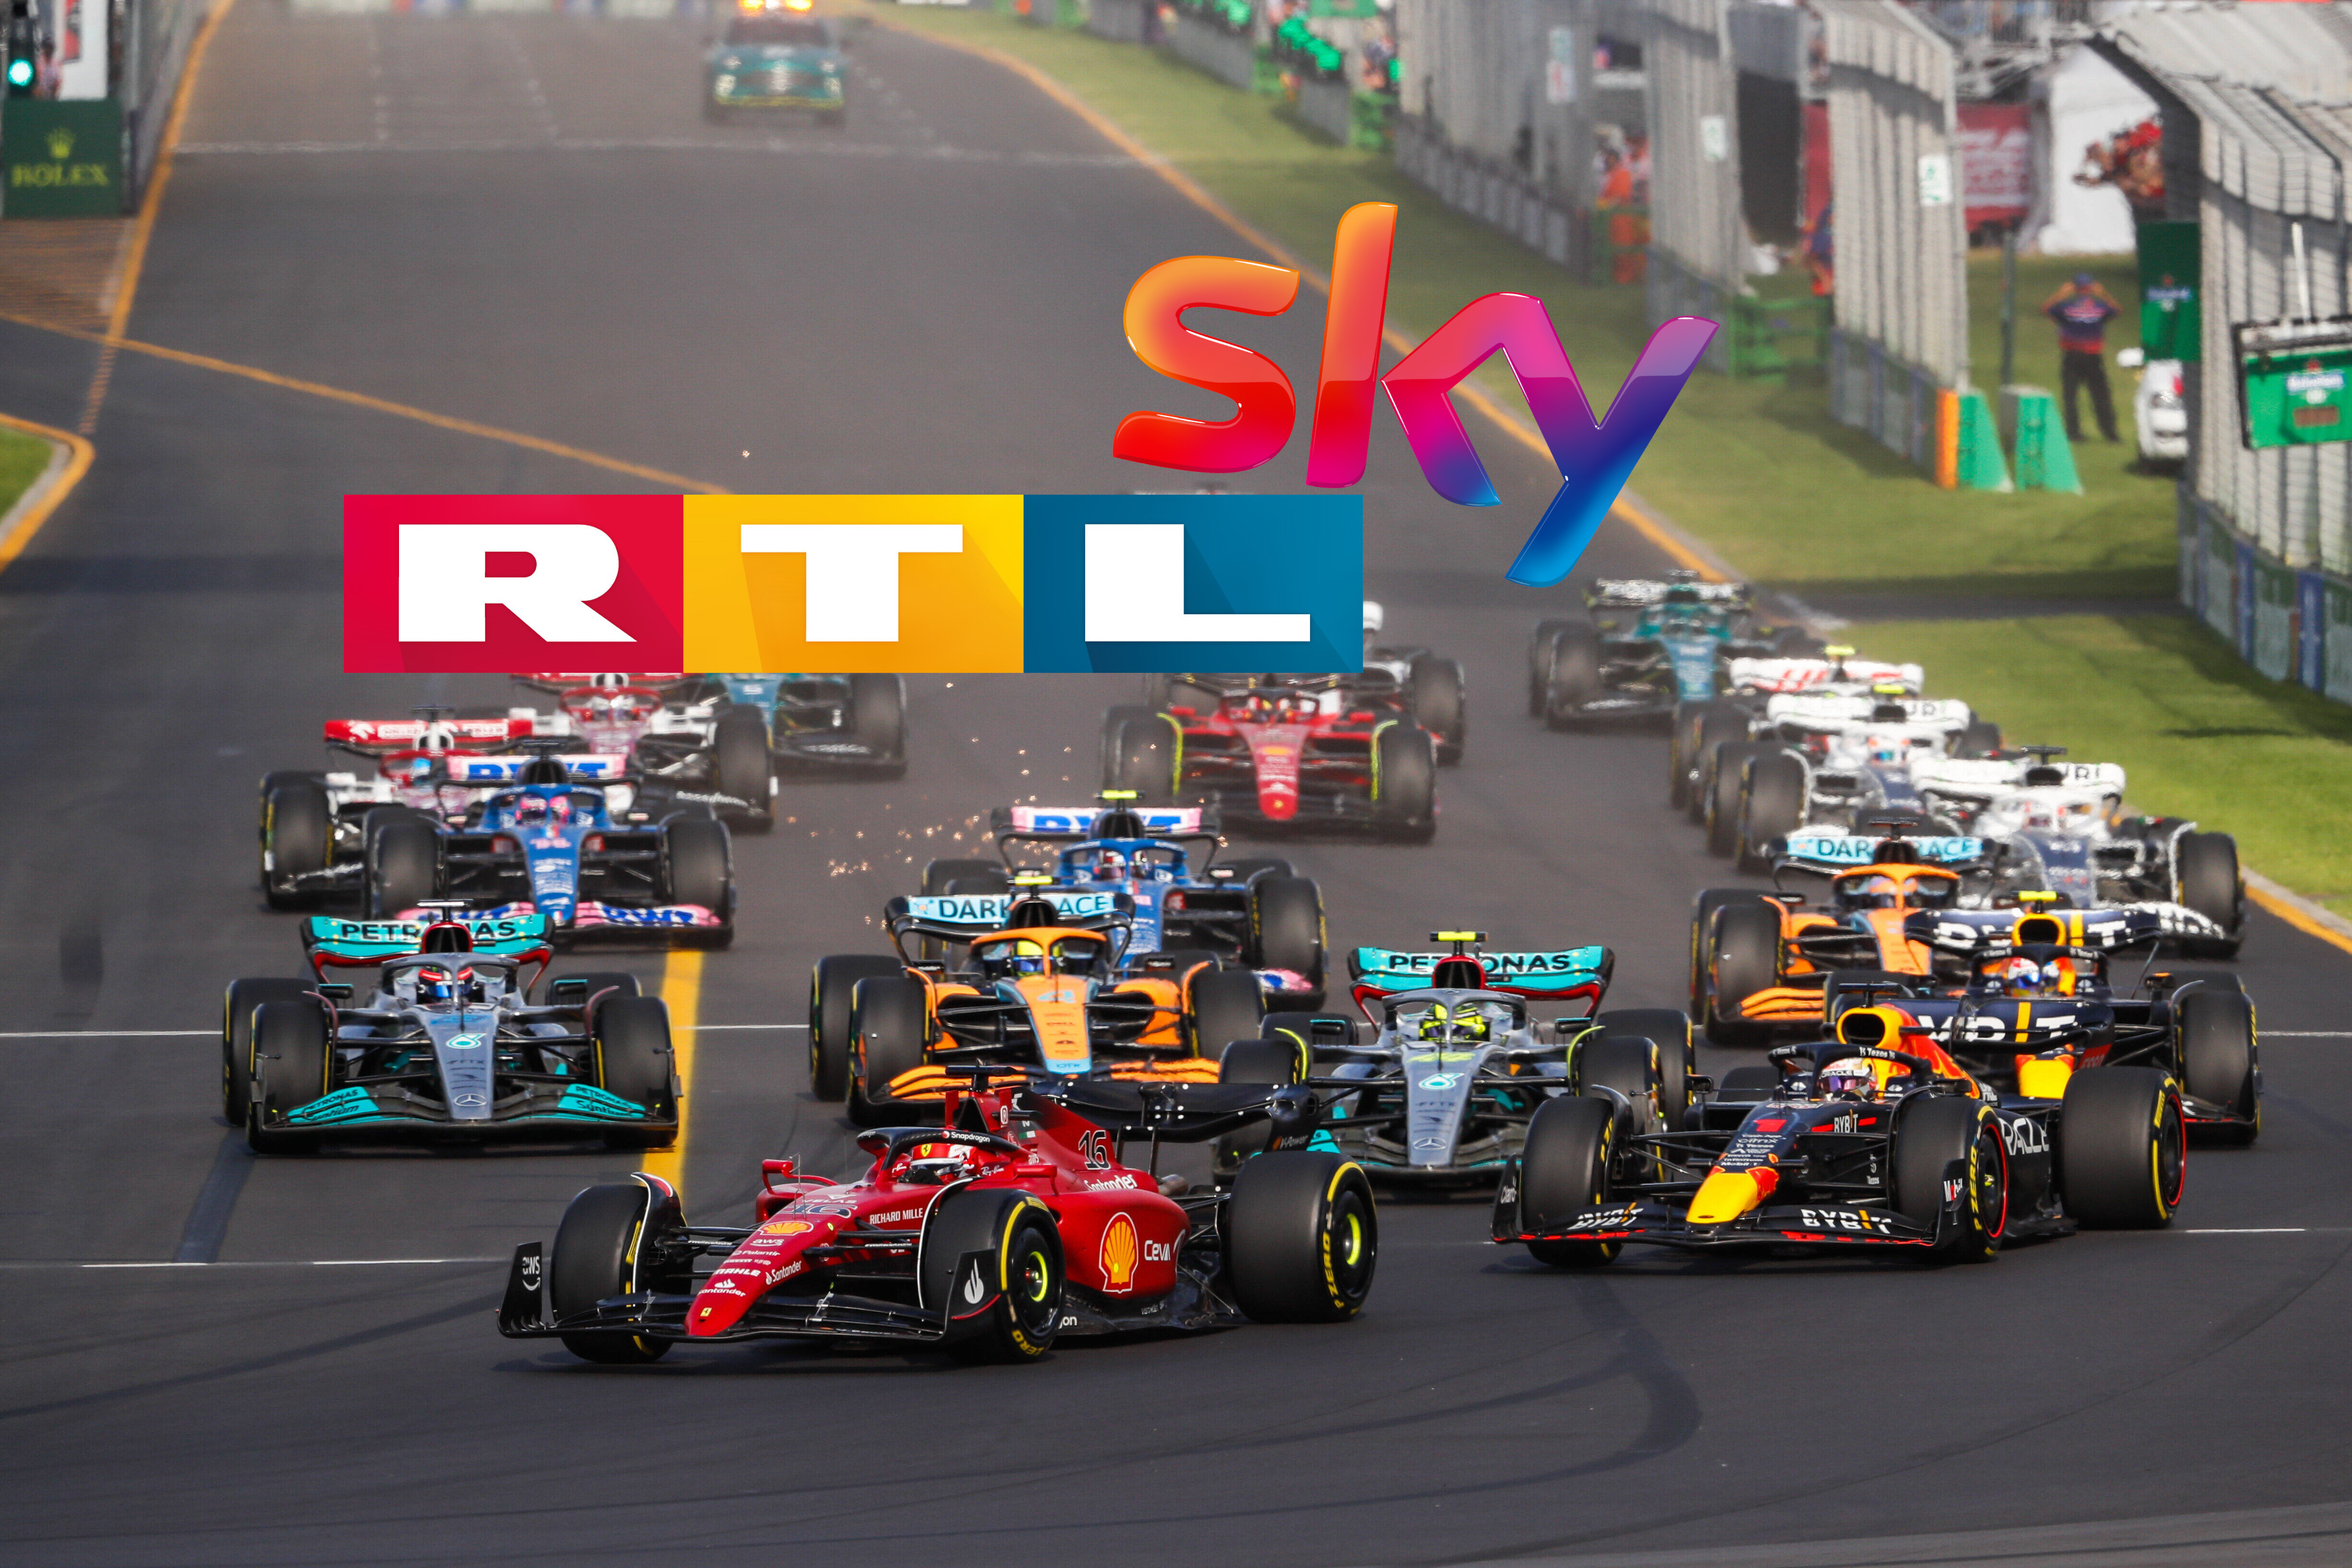 Formel 1 RTL steigt endgültig aus! Fans droht Horror